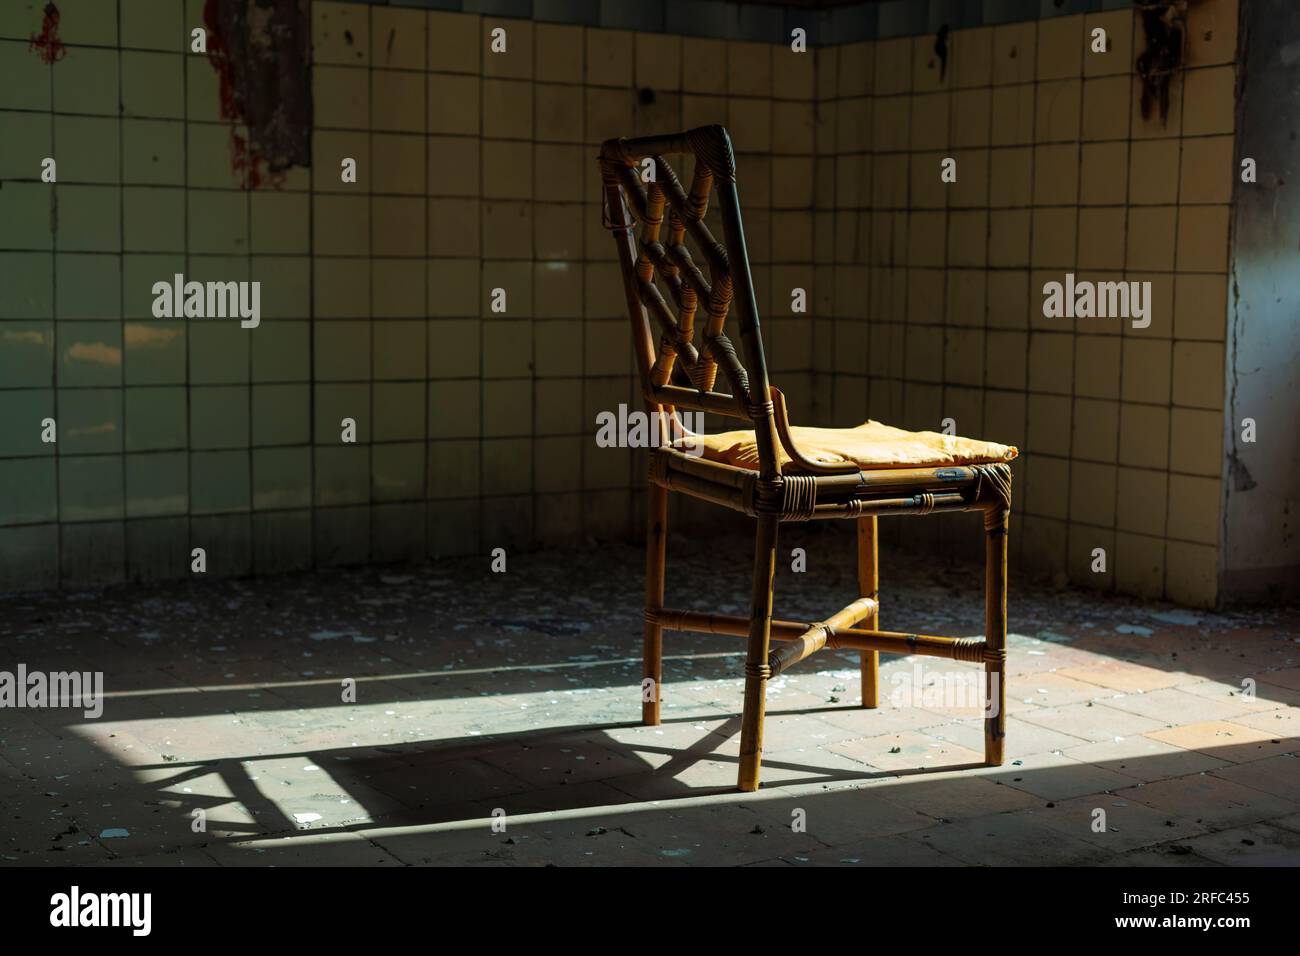 Immagine inquietante di uno spazio abbandonato - una sedia vecchia in un ambiente degradato Foto Stock